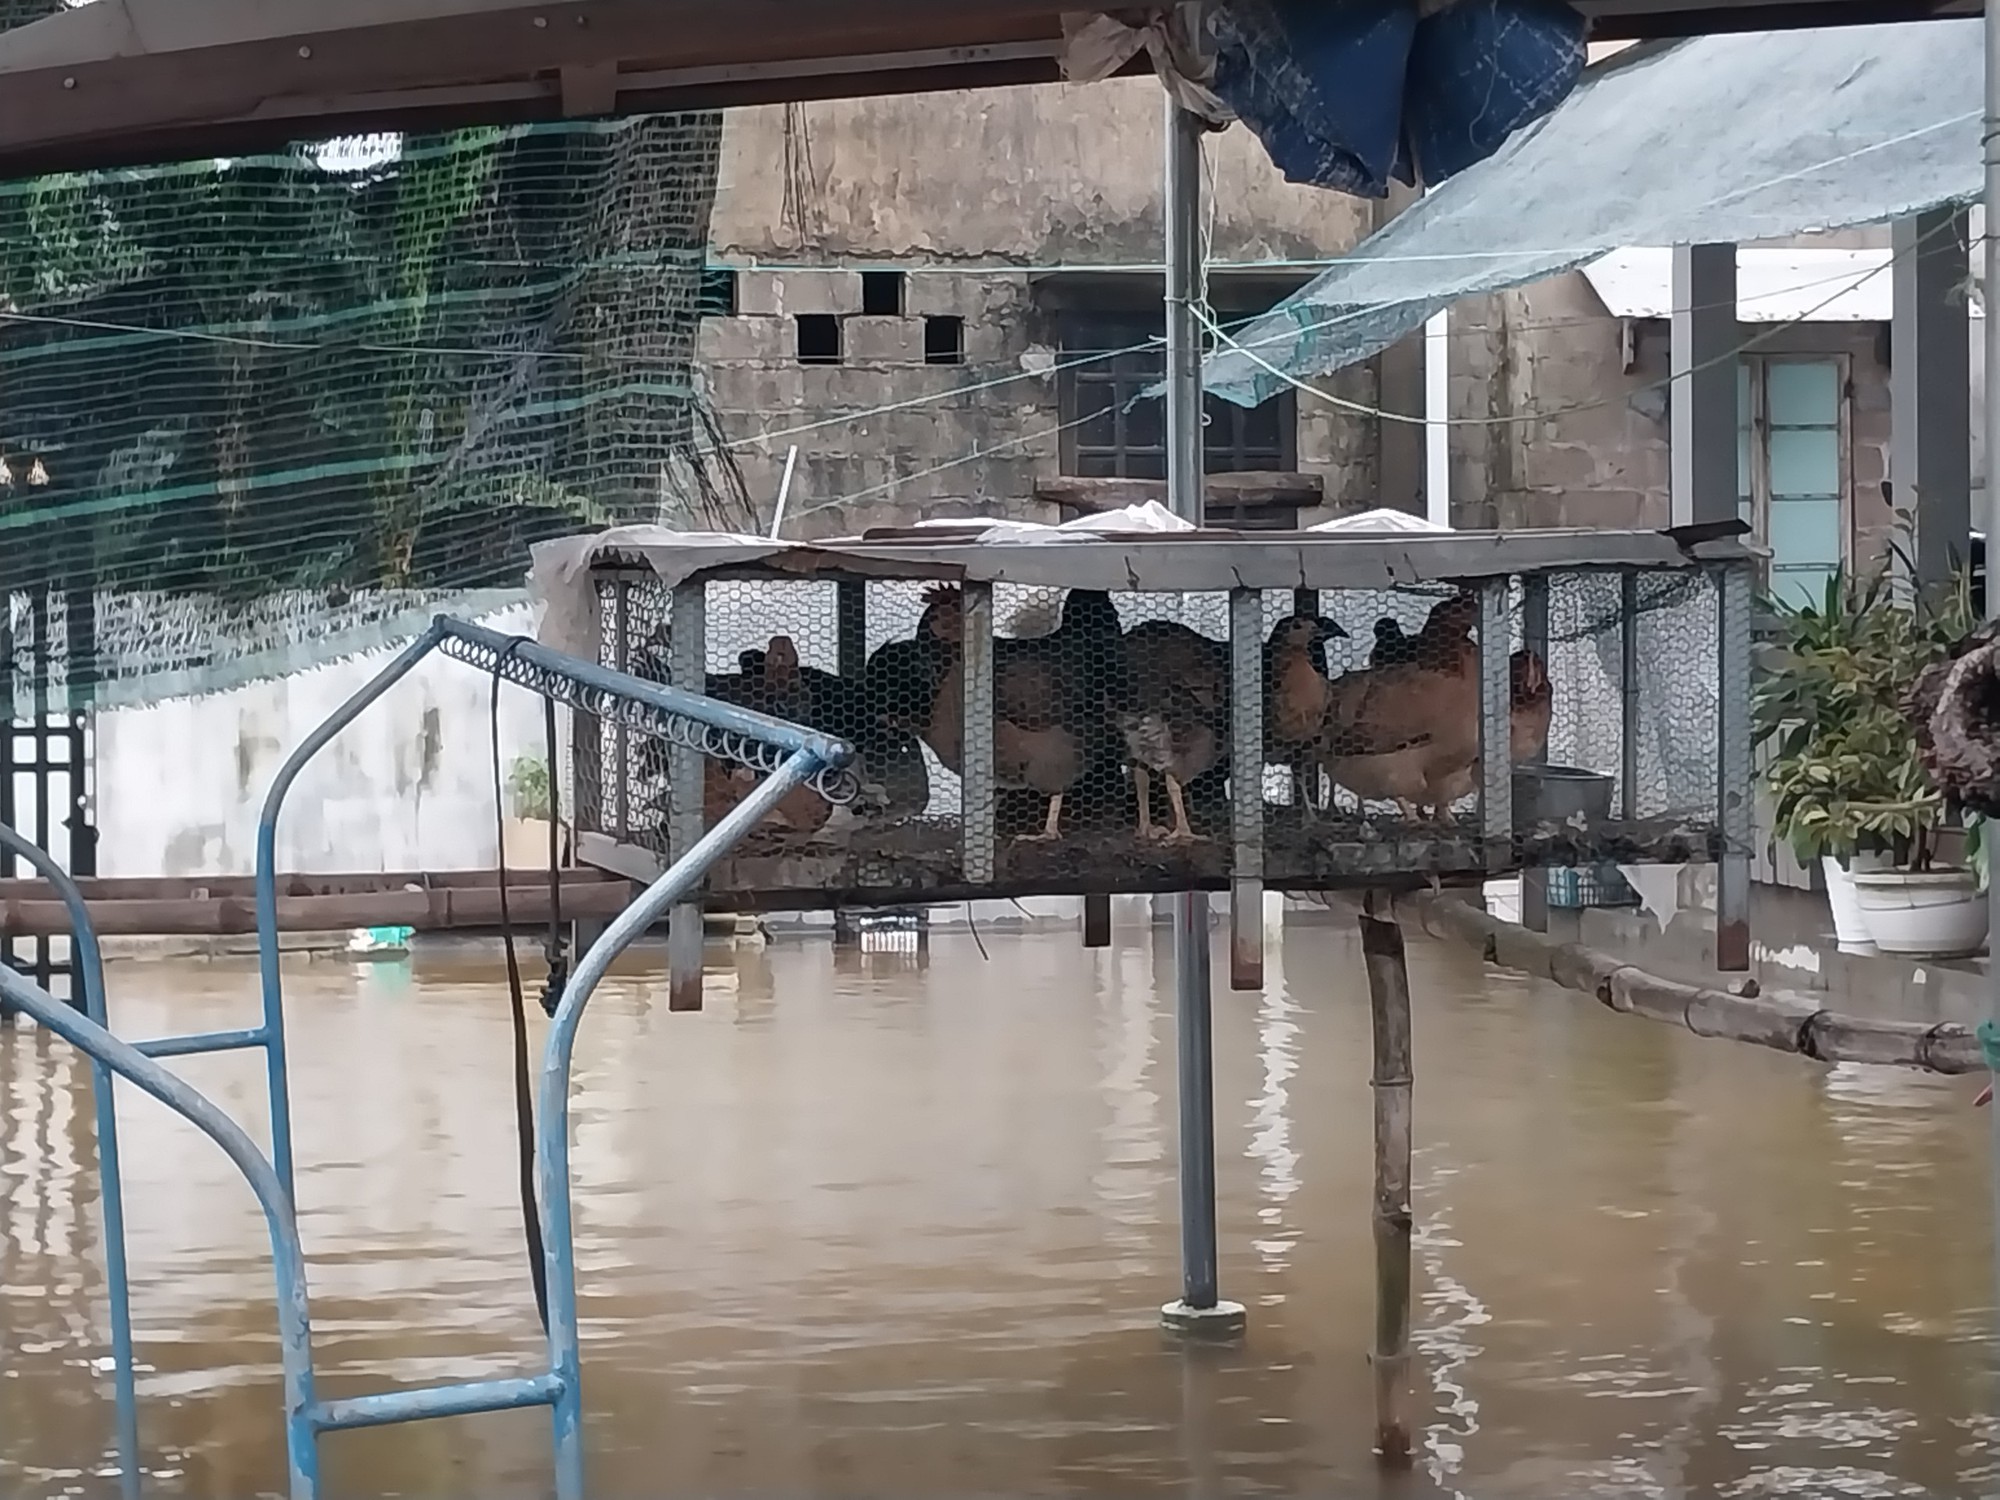 Cận cảnh ngập lụt ở hạ du Thủy điện Hương Điền - Ảnh 17.